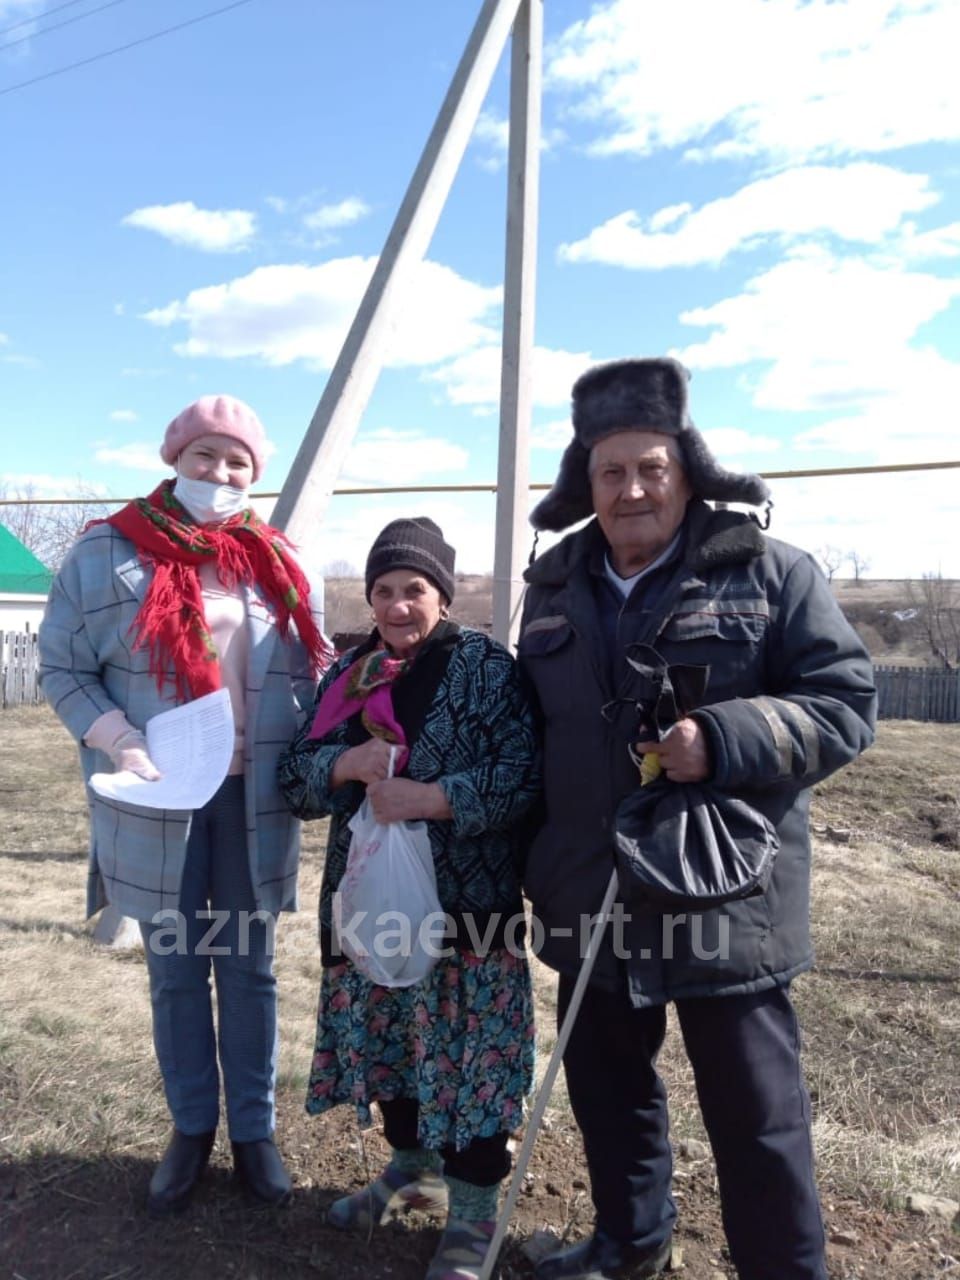 Семья Курбановых из Азнакаевского района порадовала односельчан